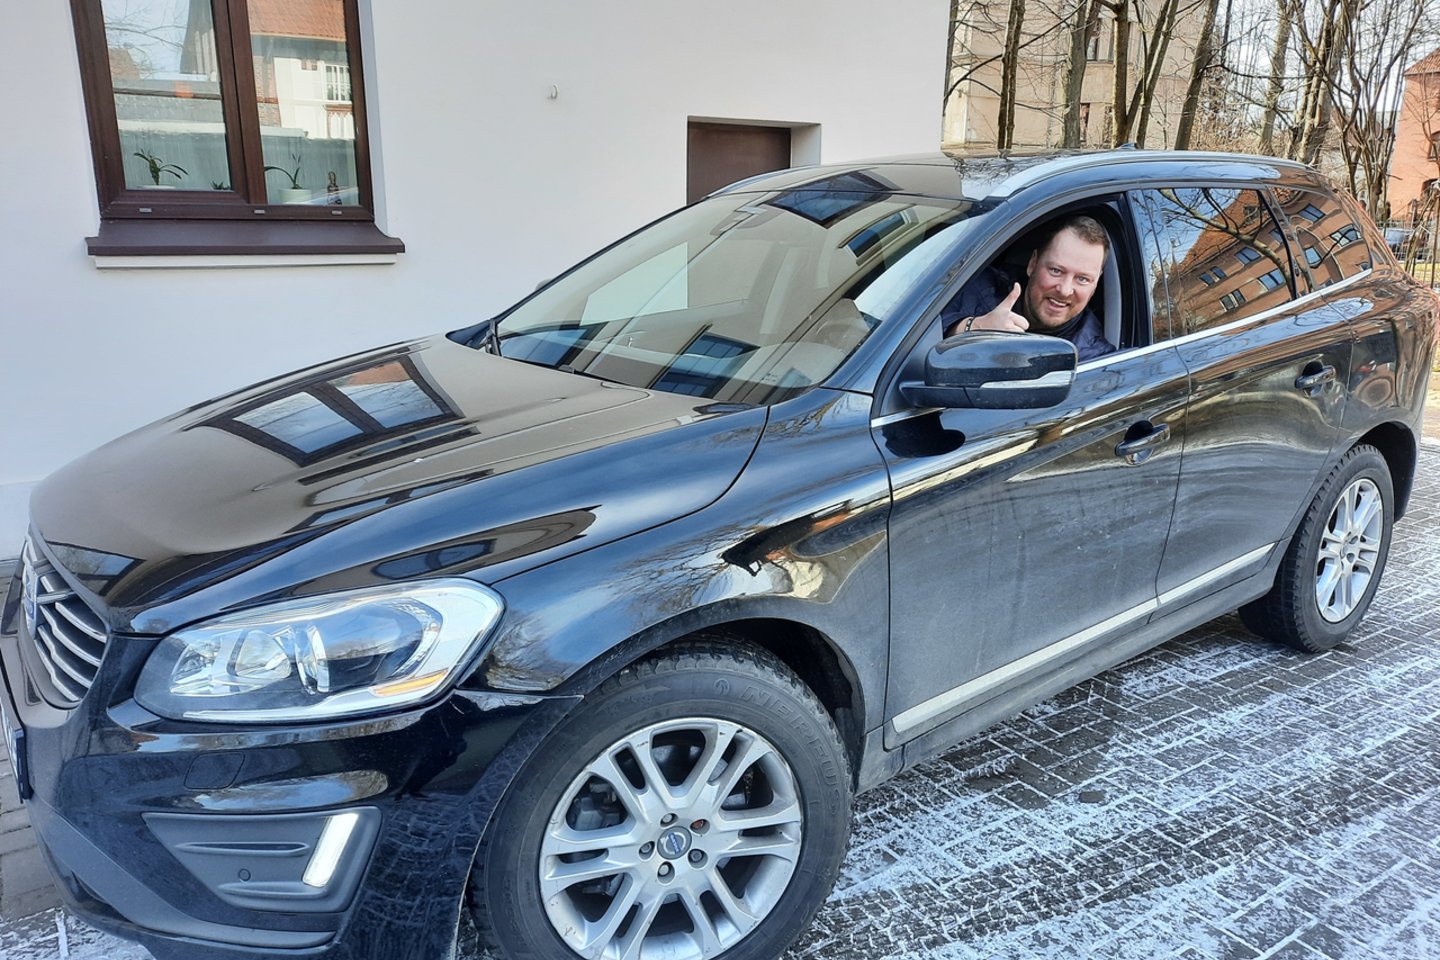 V.Tarasovas džiaugiasi įsigijęs „Volvo XC60“.<br>Nuotr. iš asmeninio albumo.